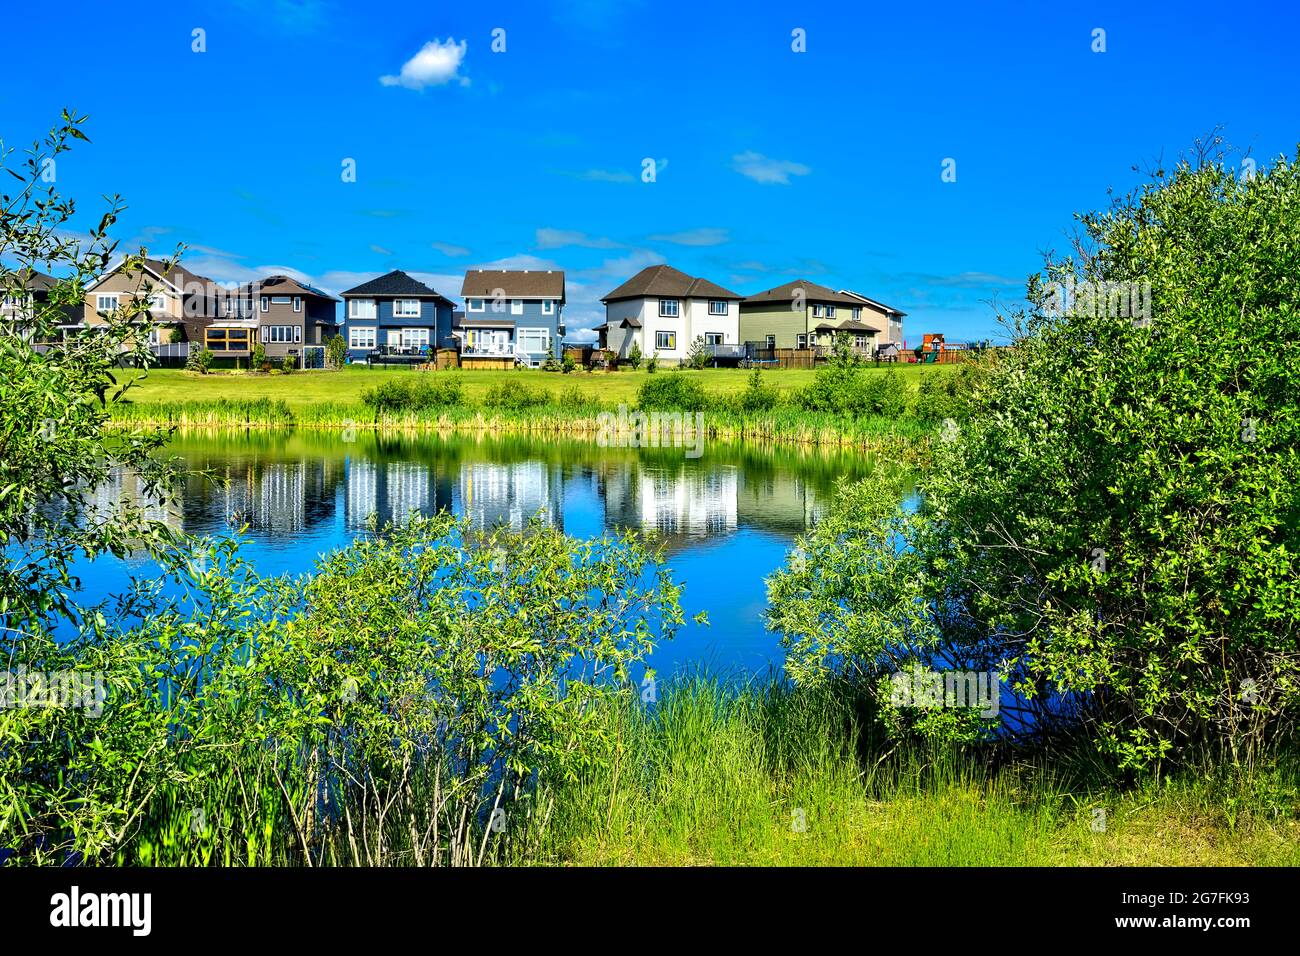 Eine urbane Landschaft mit Grünflächen, einem Teich, Häusern und blauem Himmel in Morinville, Alberta, Kanada. Stockfoto